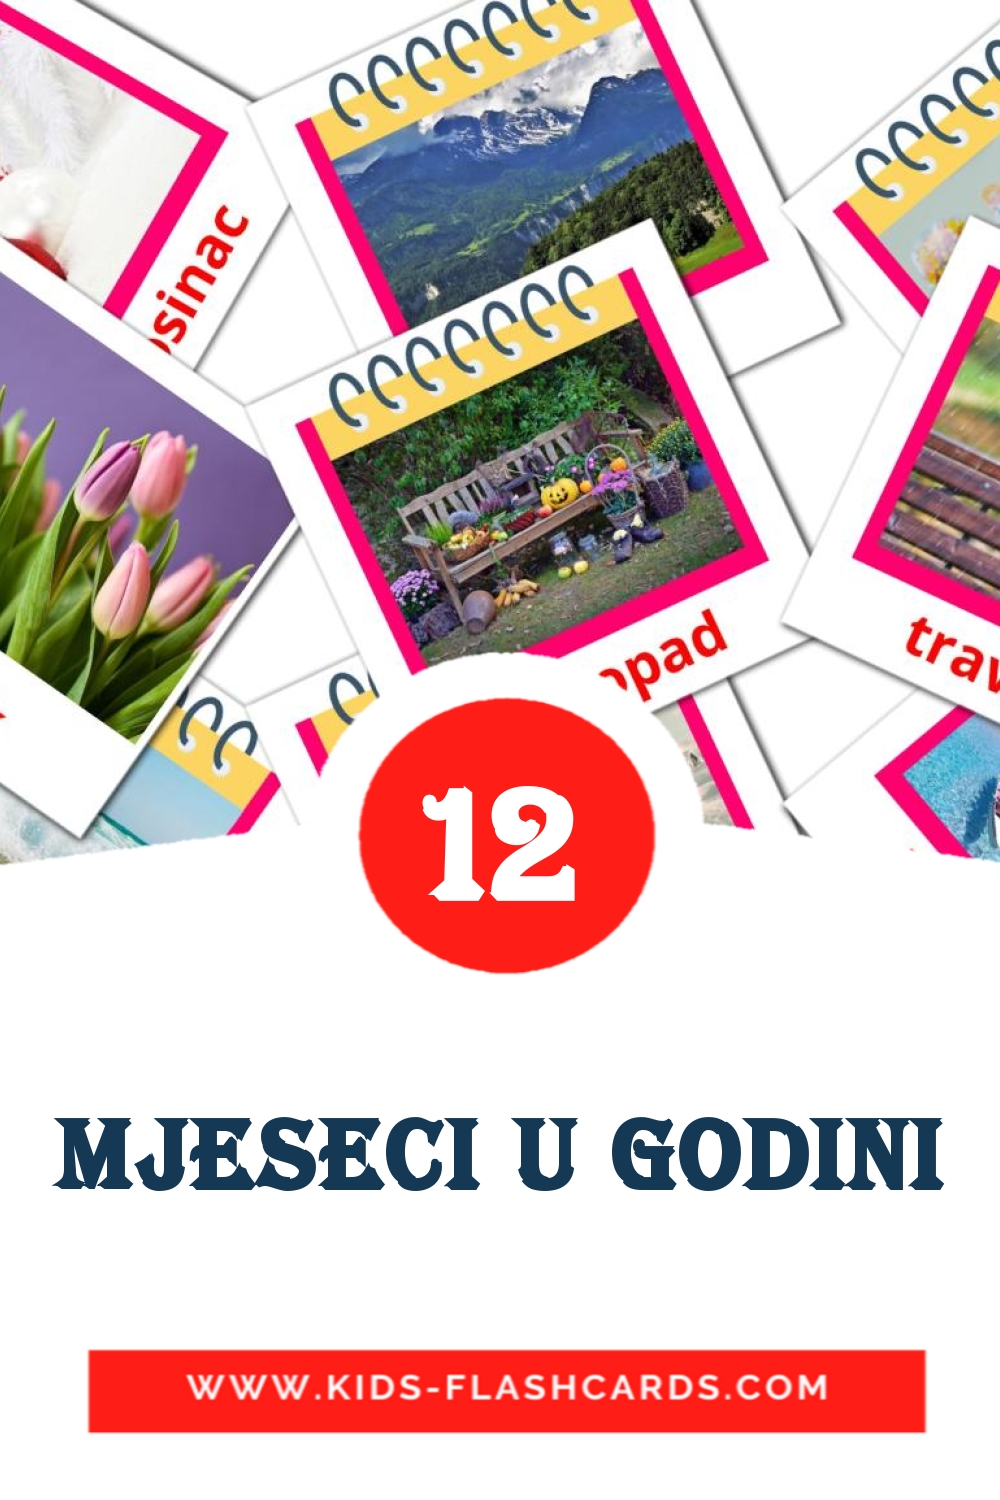 12 Cartões com Imagens de Mjeseci u godini para Jardim de Infância em croata